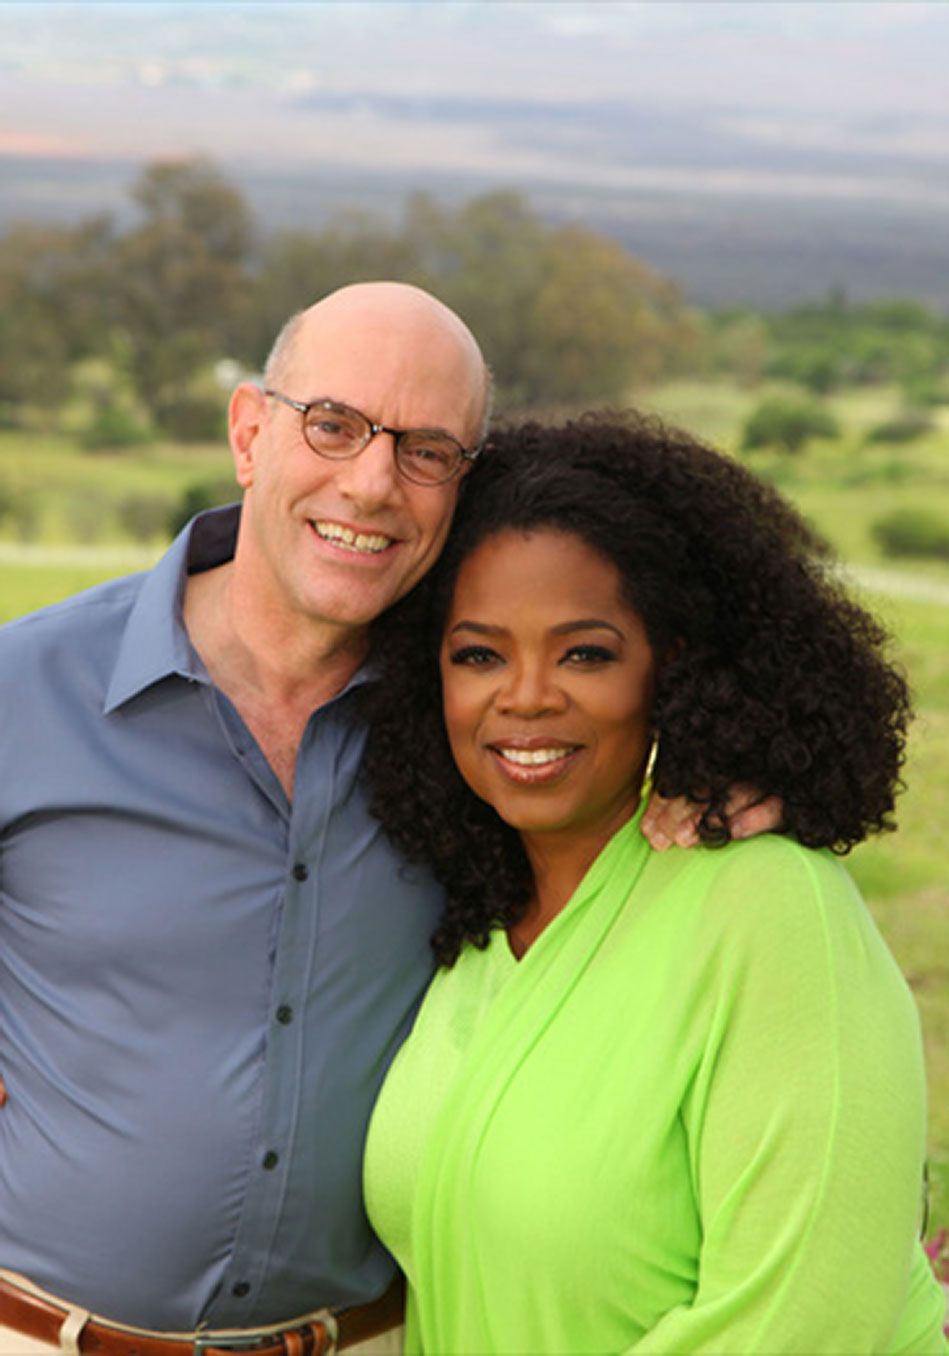 Mark Nepo and Oprah Winfrey